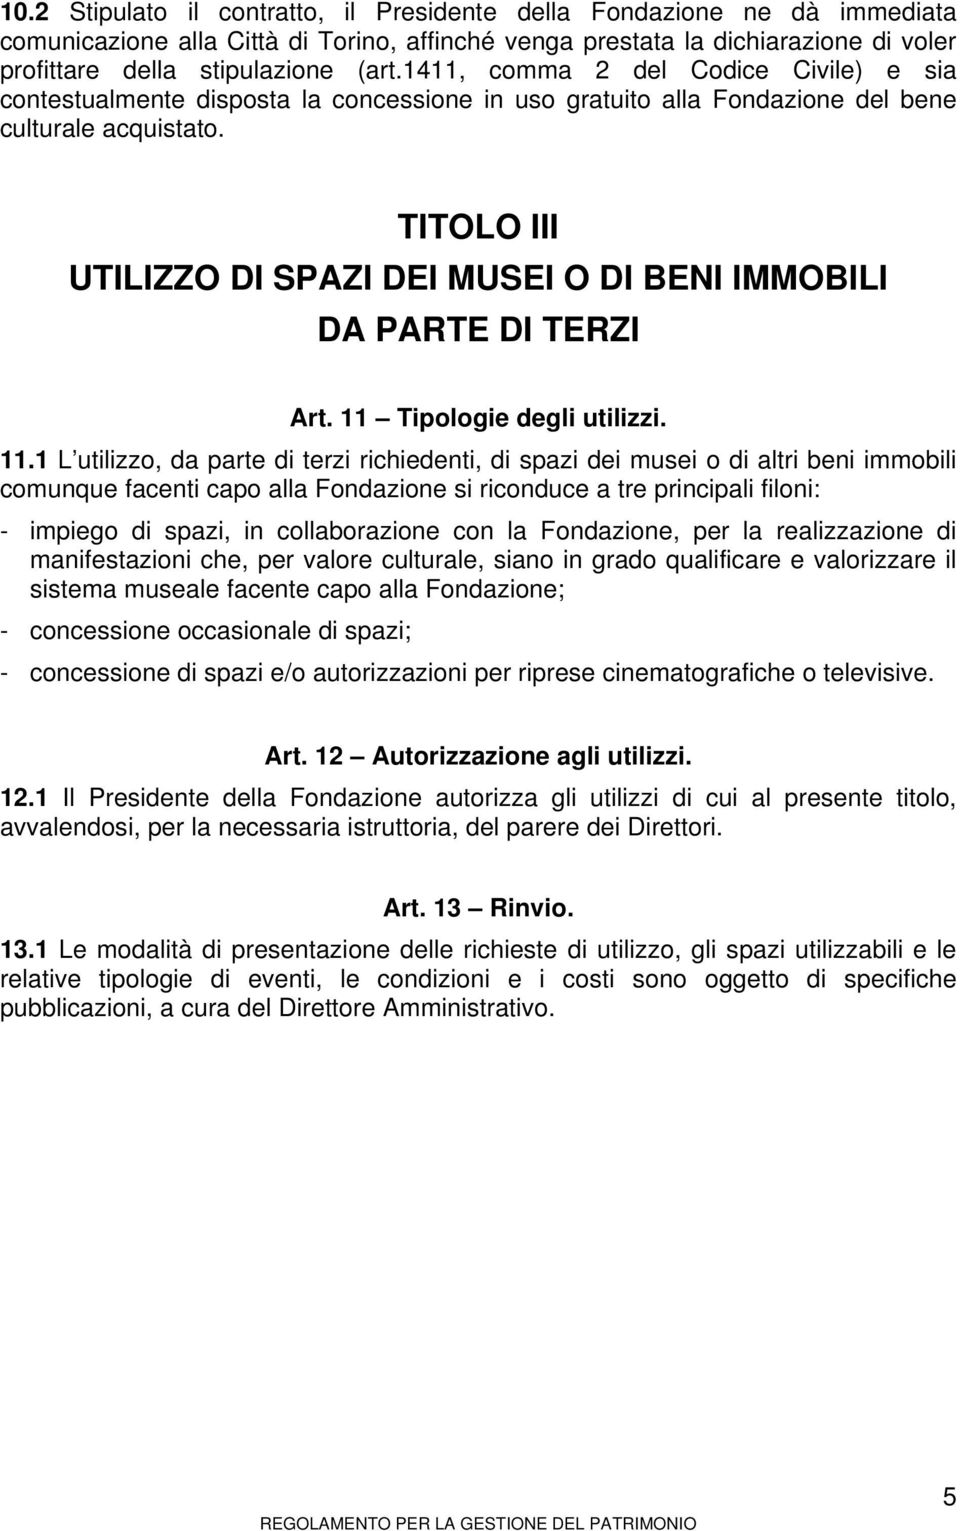 TITOLO III UTILIZZO DI SPAZI DEI MUSEI O DI BENI IMMOBILI DA PARTE DI TERZI Art. 11 